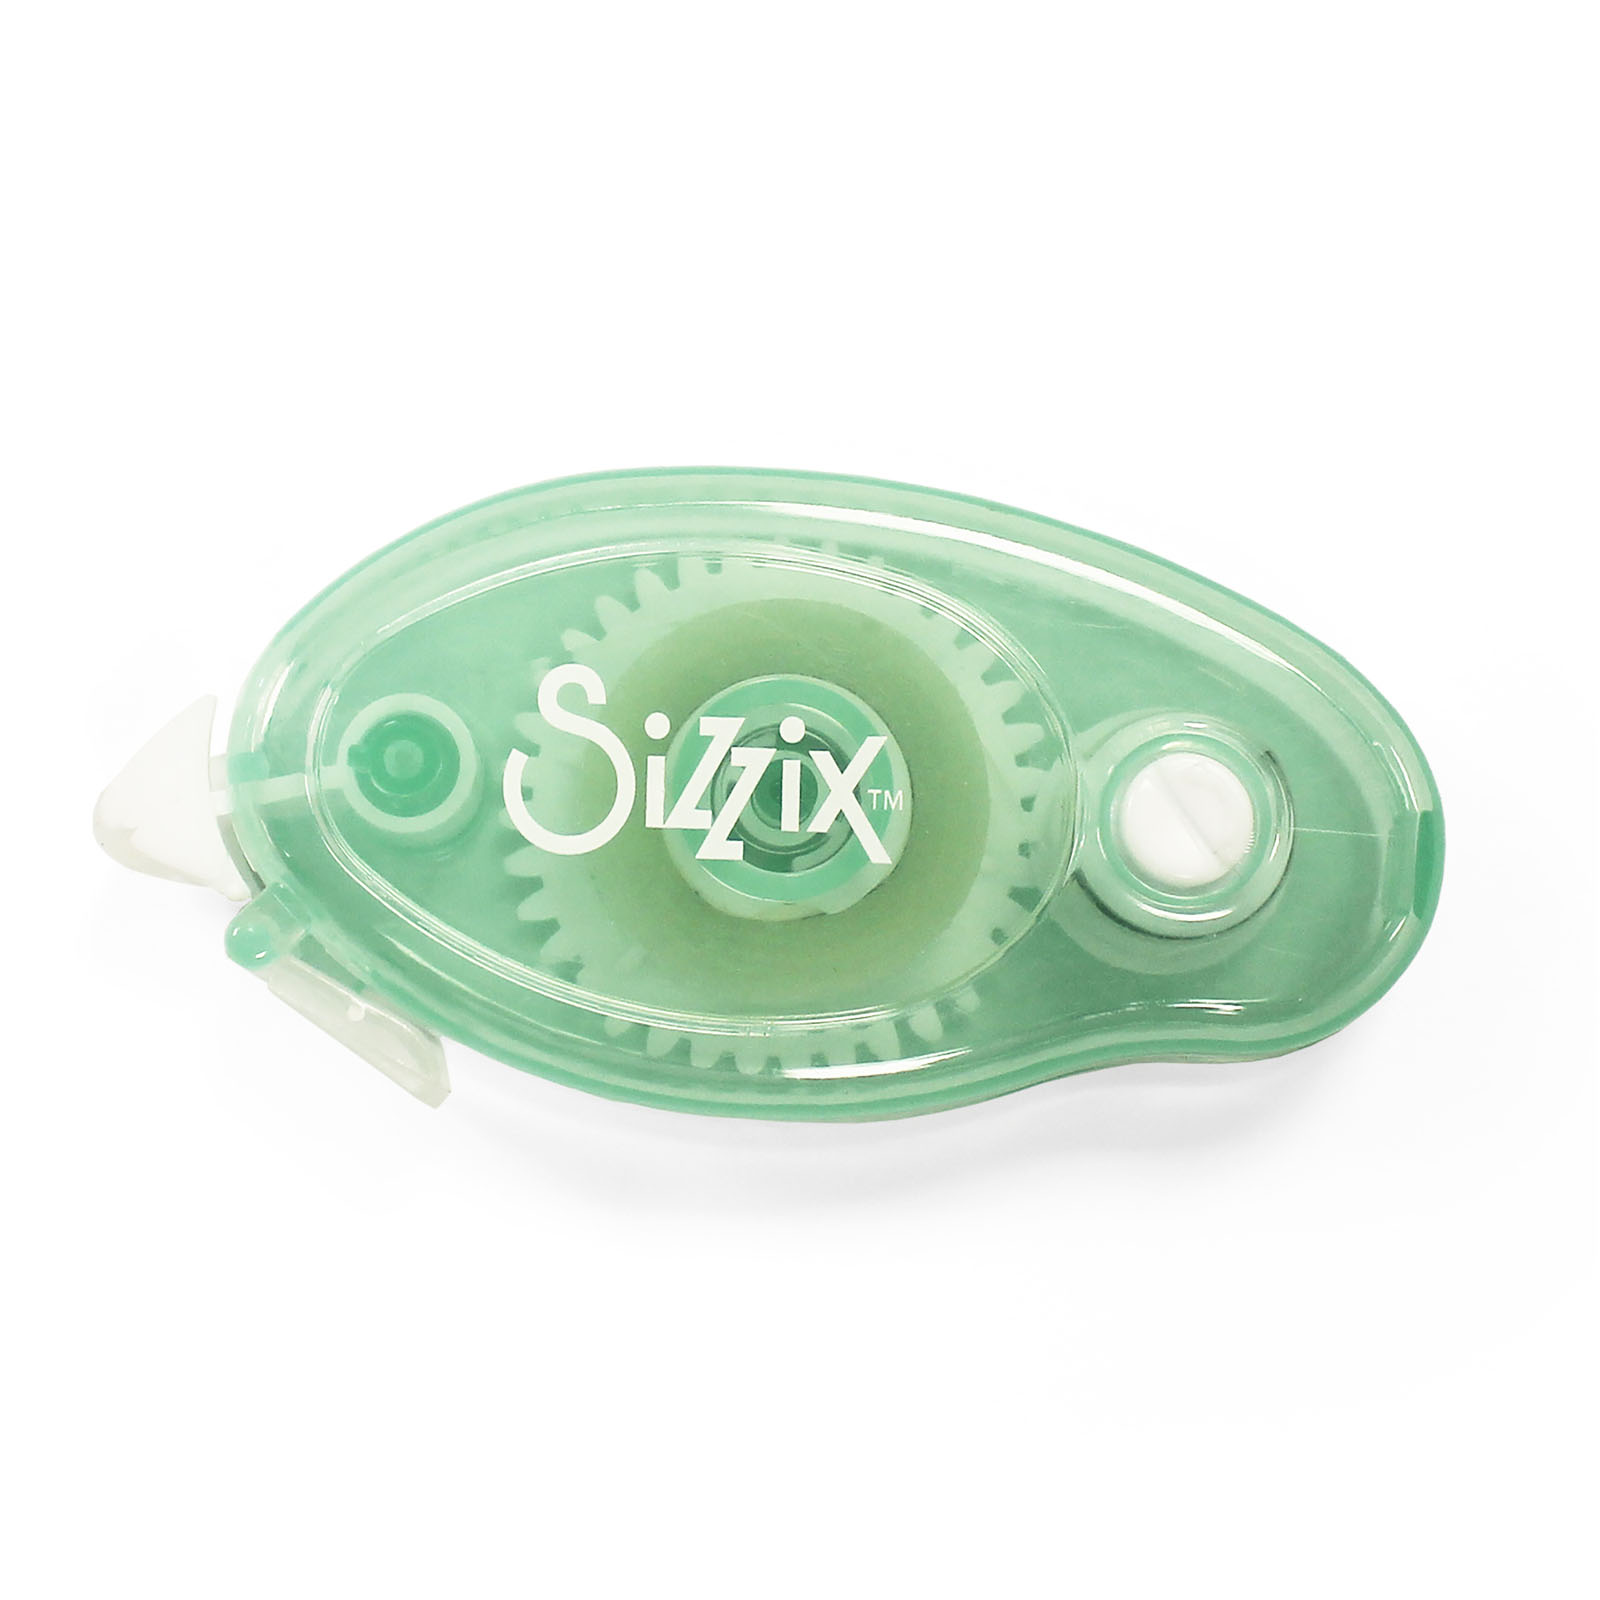 Sizzix • Fabricación de rodillos adhesivos permanentes esenciales